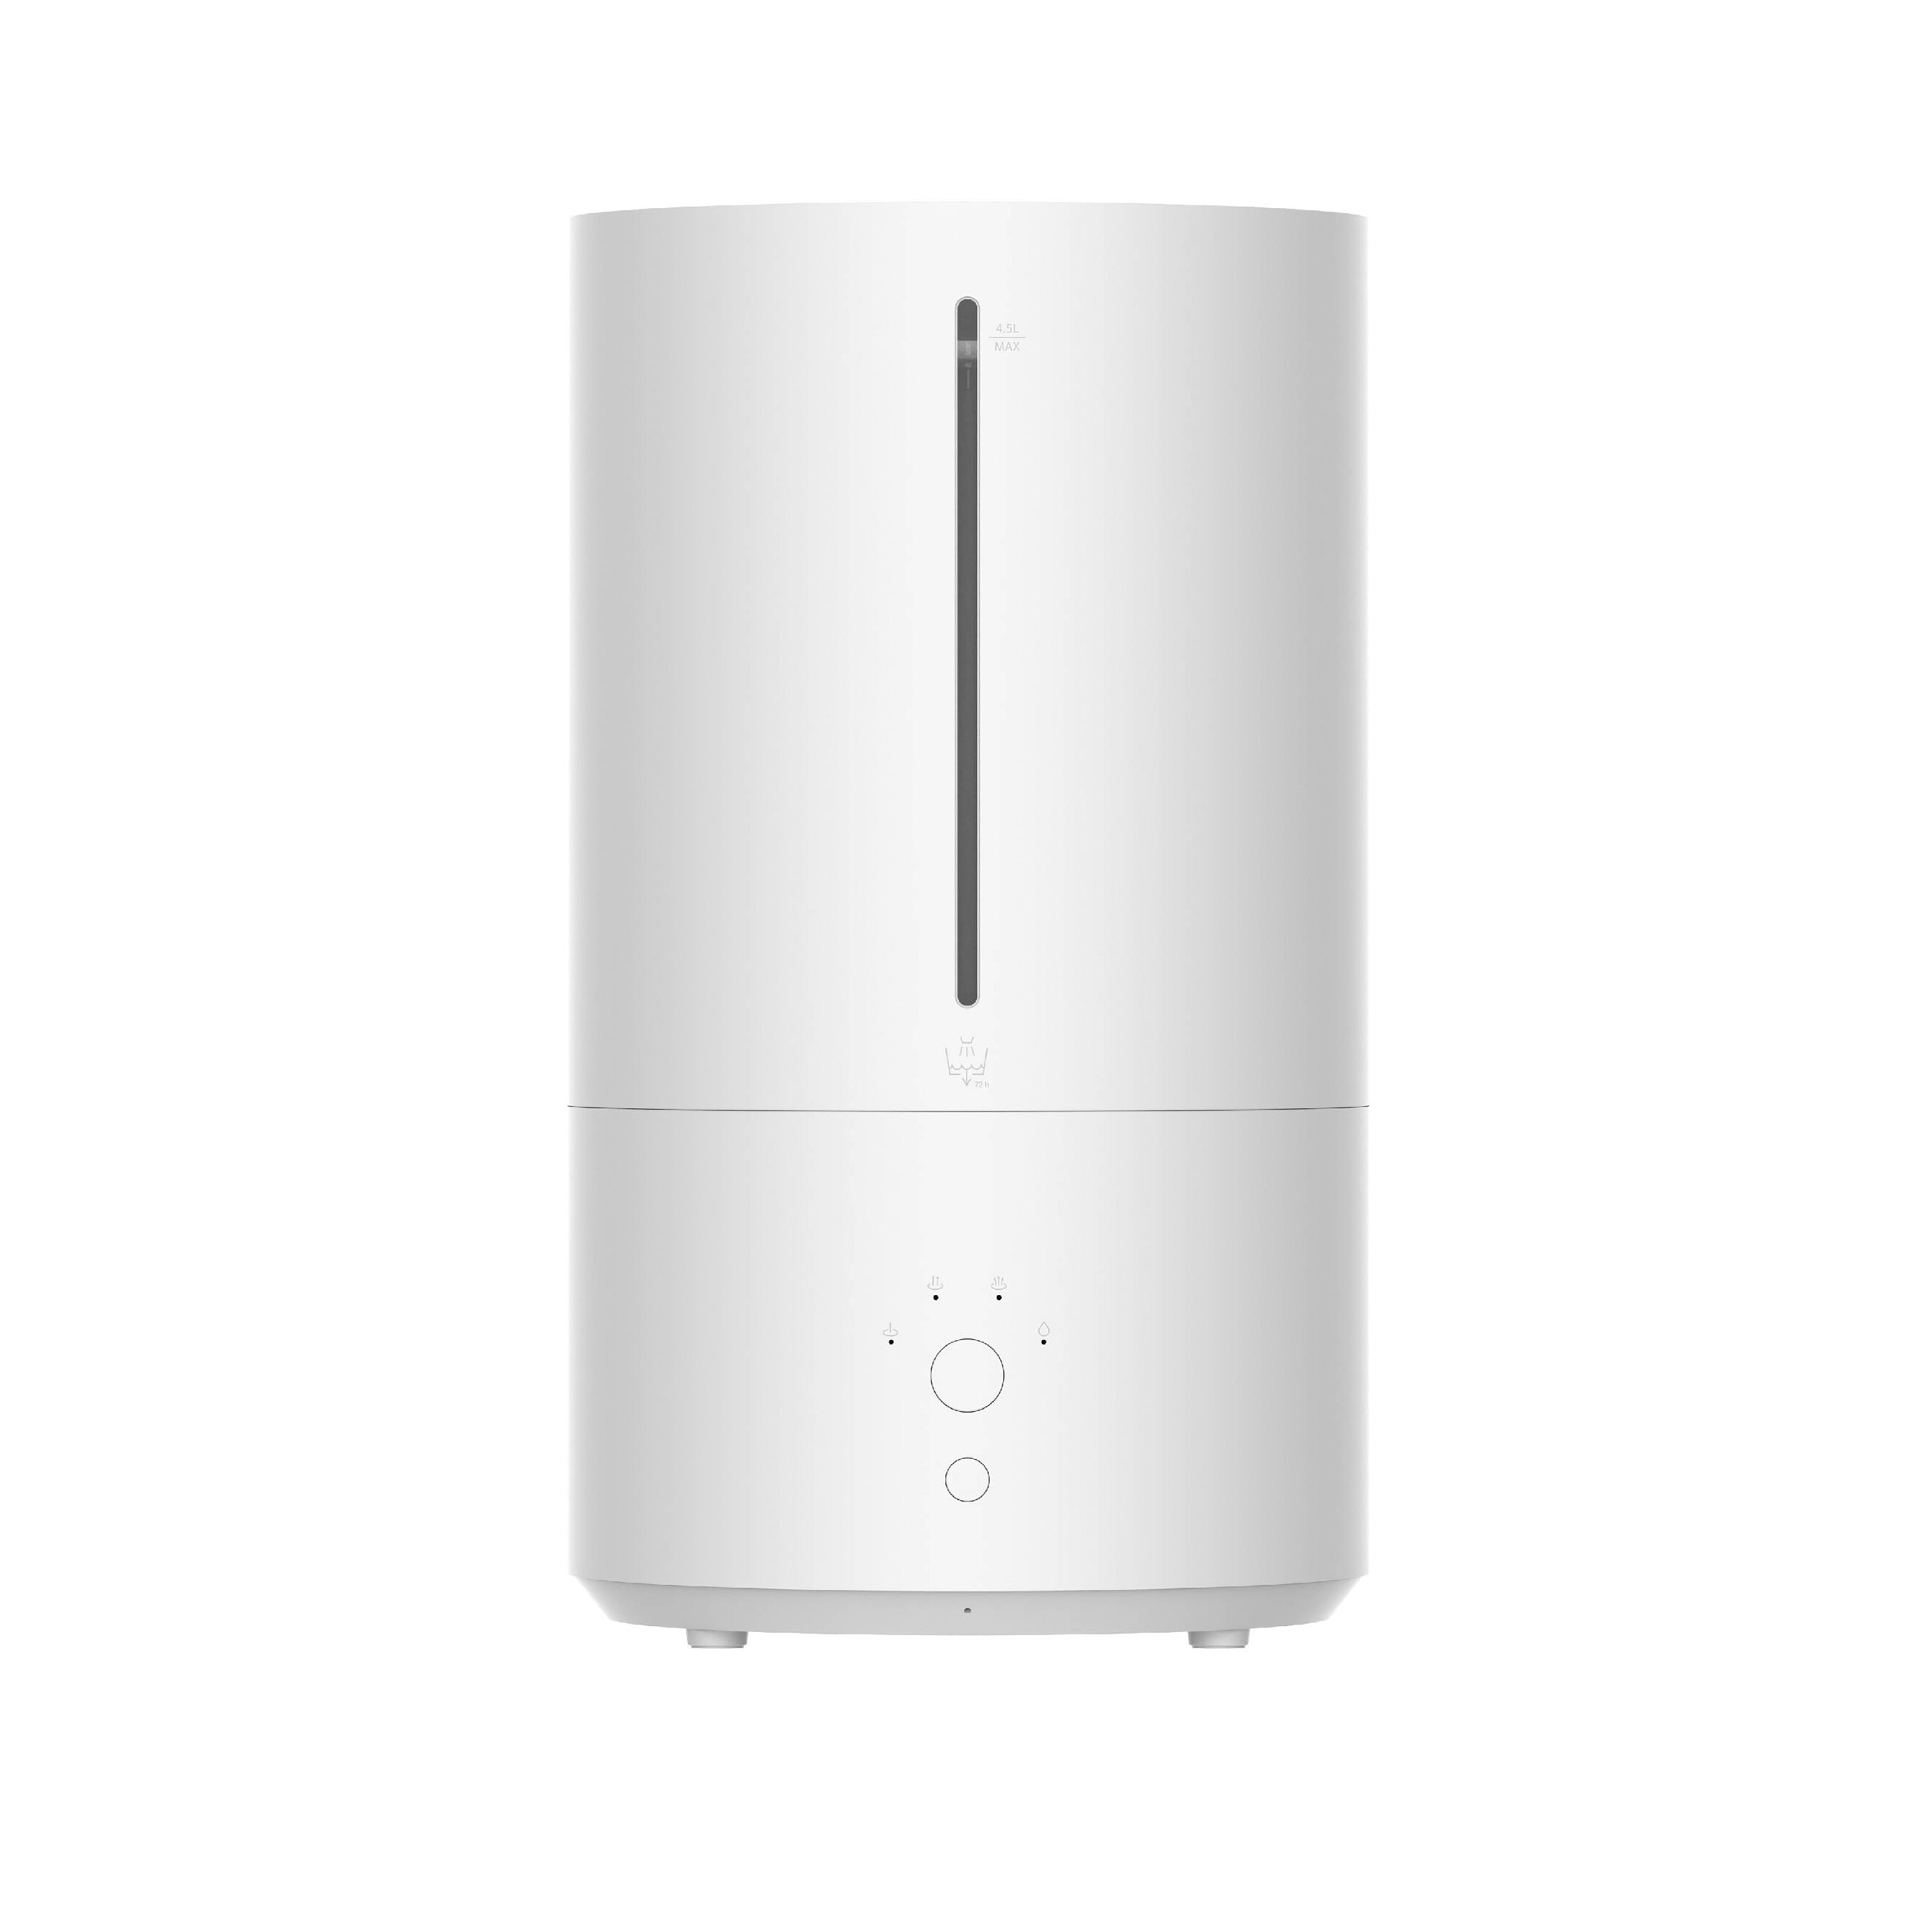 Weiss Xiaomi 20 Raumgröße: (28 m²) EU, XIAOMI 2 Watt, Luftbefeuchter Humidifier Smart BHR6026EU